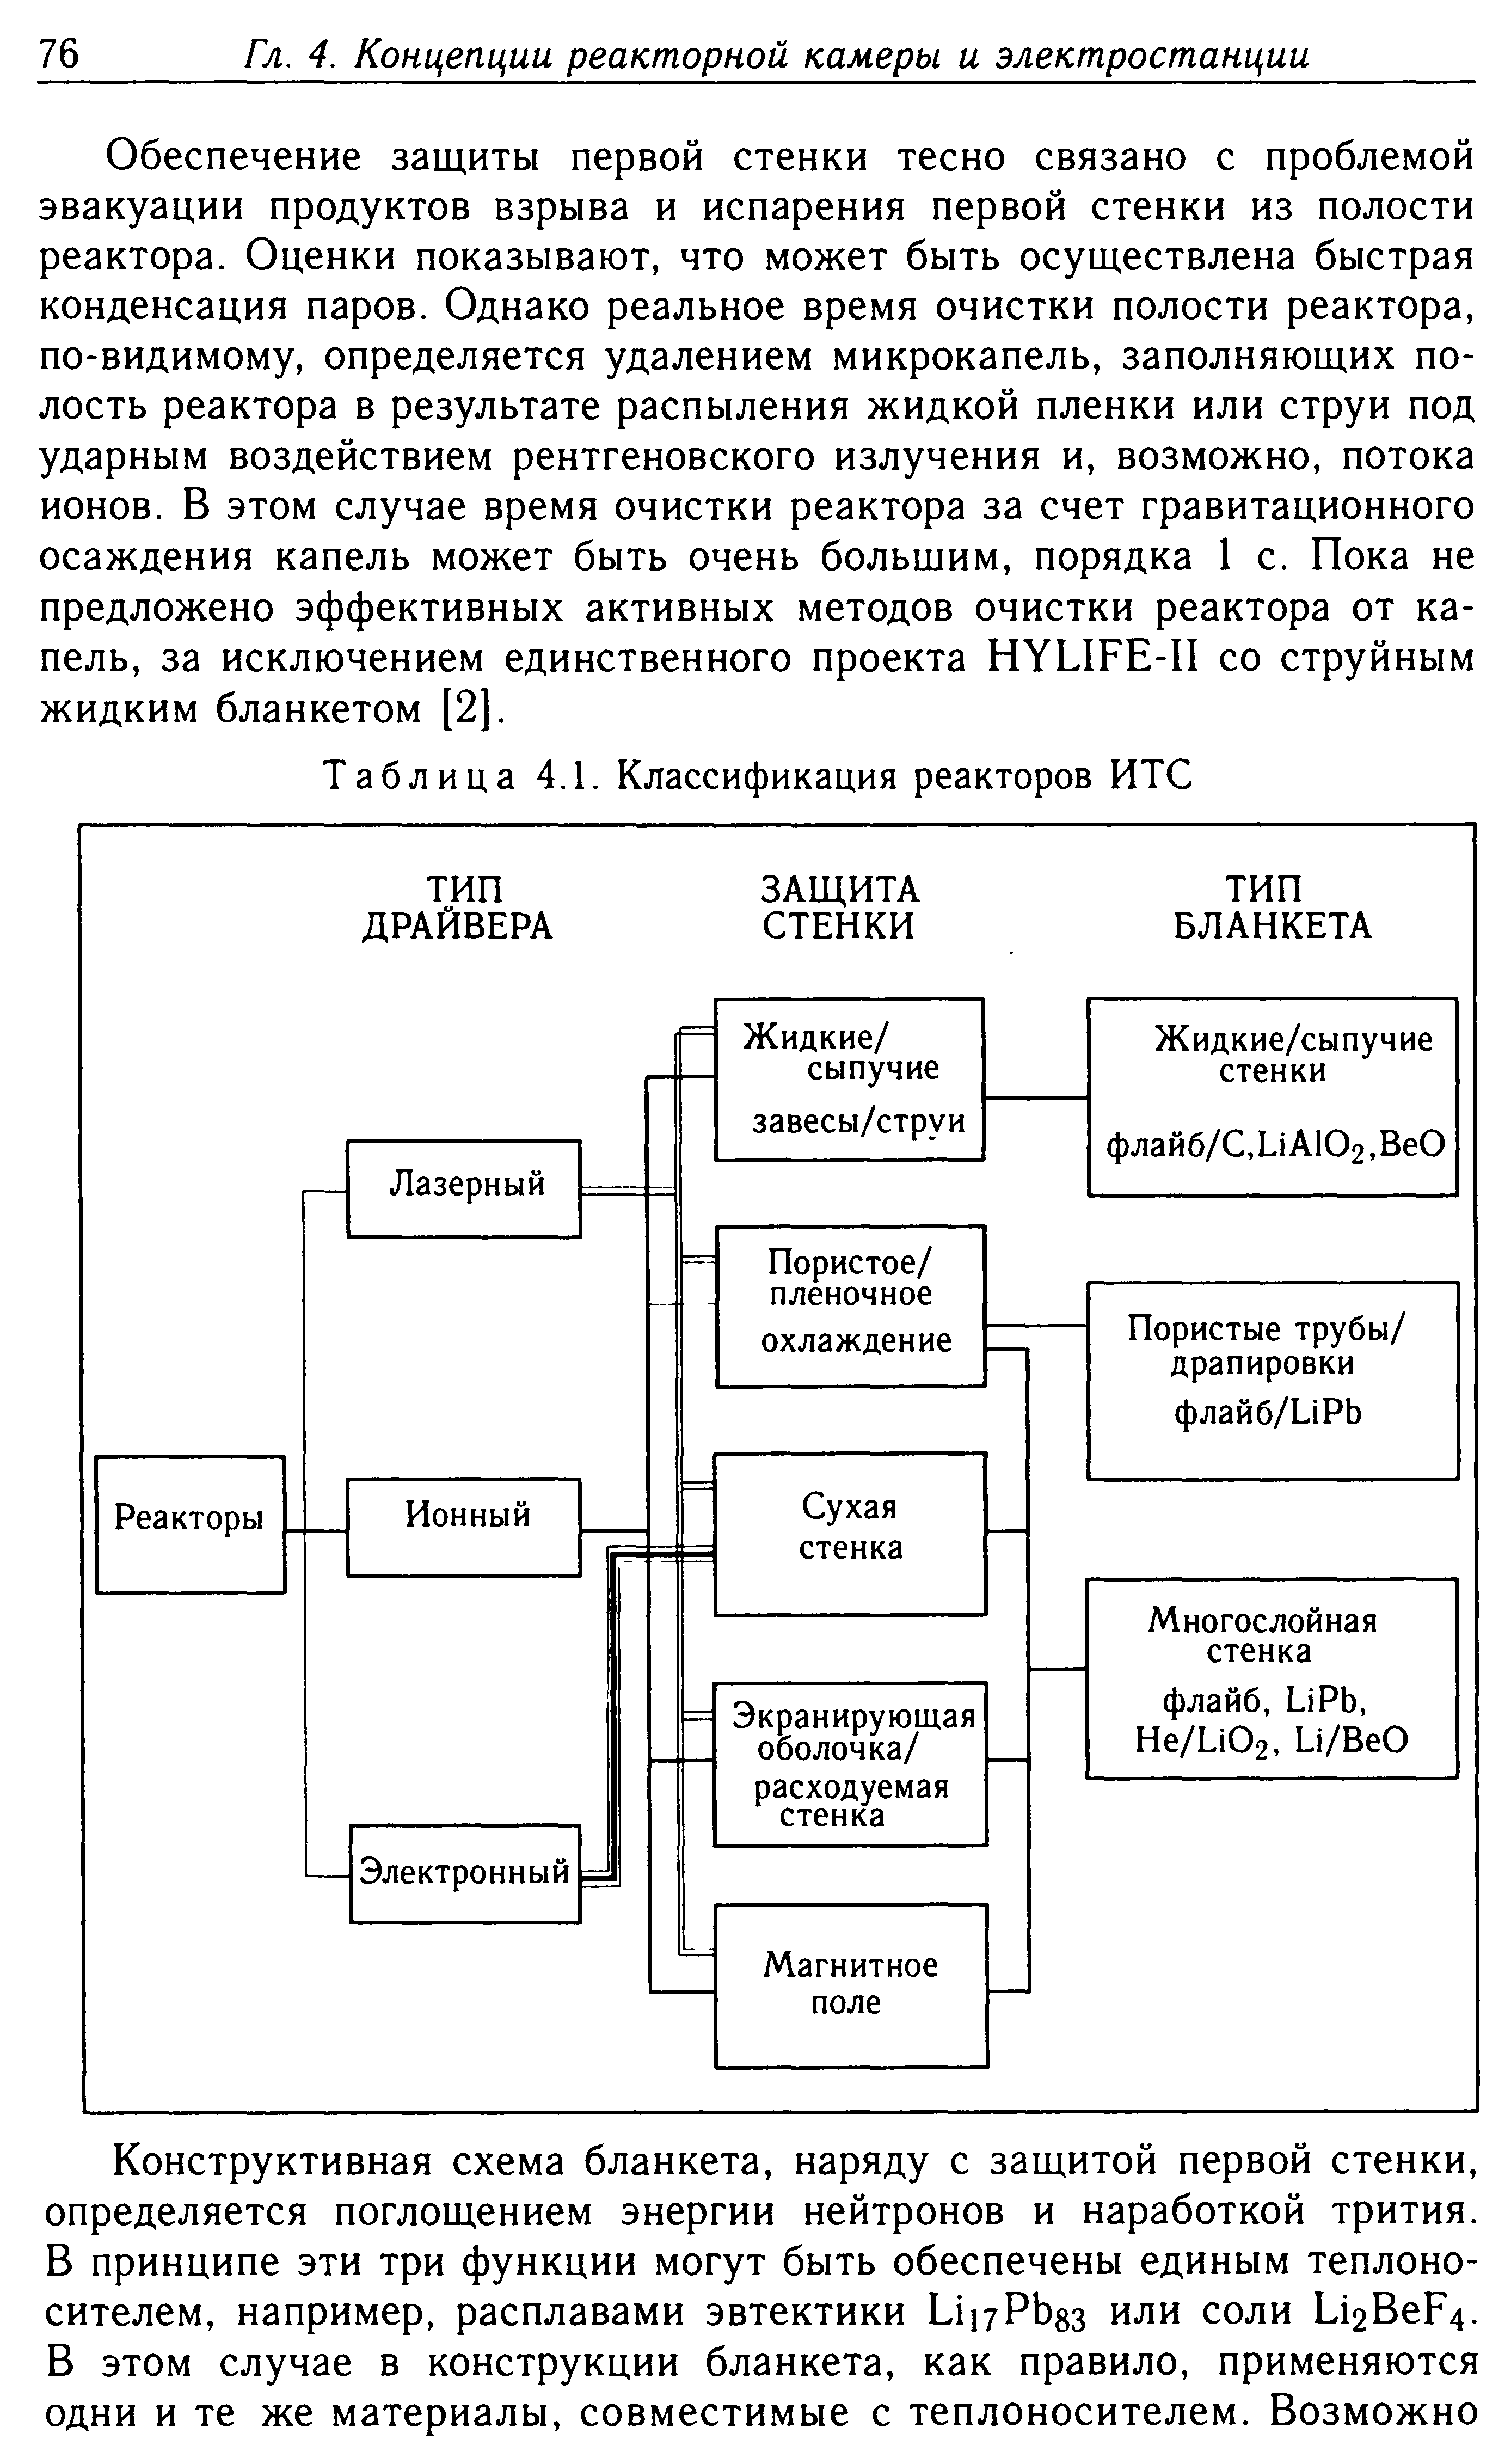 Таблица 4.1. Классификация реакторов ИТС
